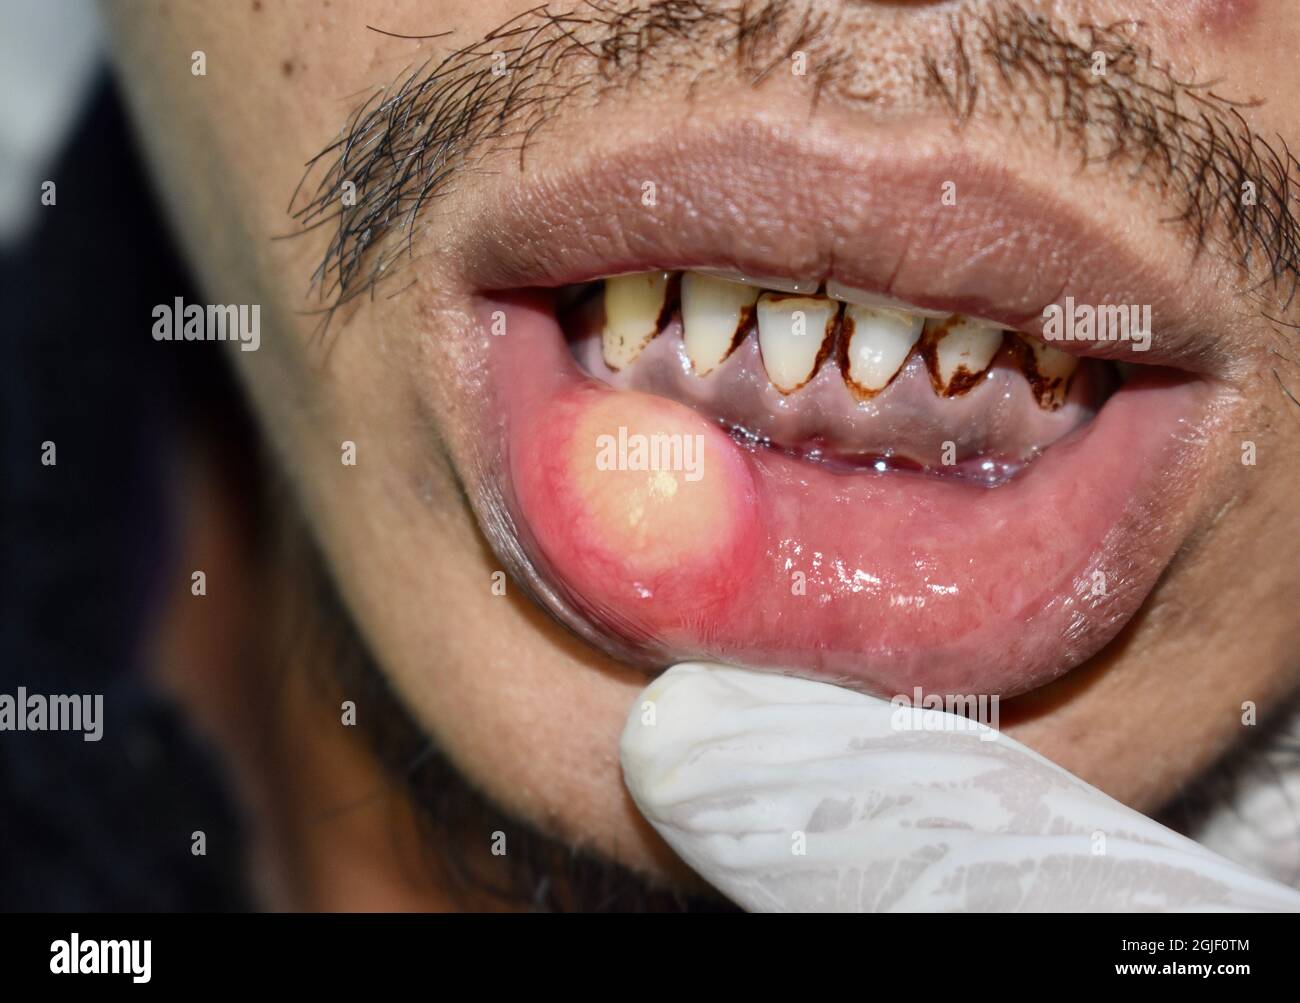 Abcès ou kyste avec pus à la lèvre inférieure de l'homme asiatique. Banque D'Images